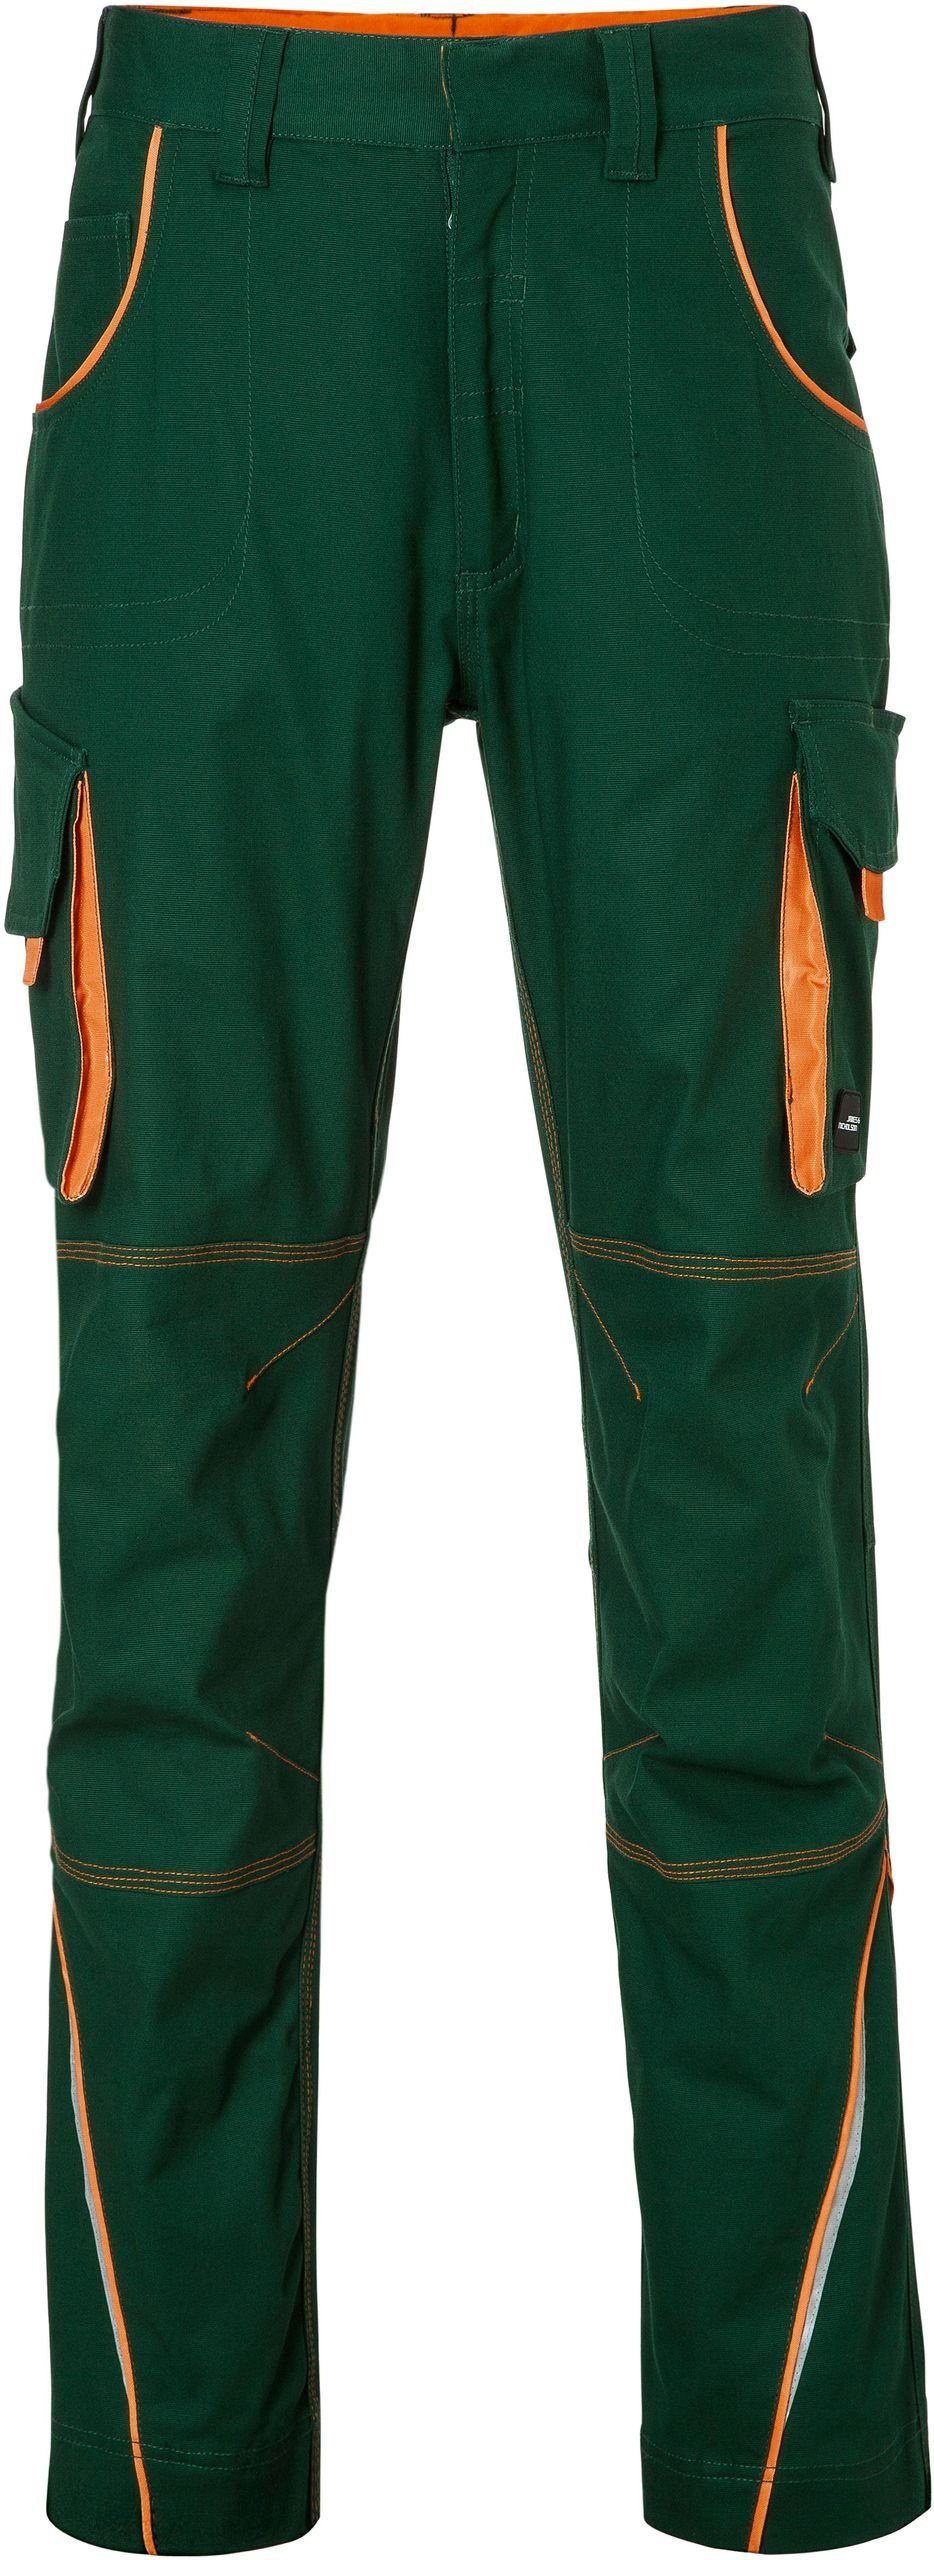 James & Nicholson Workwear dark Arbeitshose Hose green/orange FaS50847